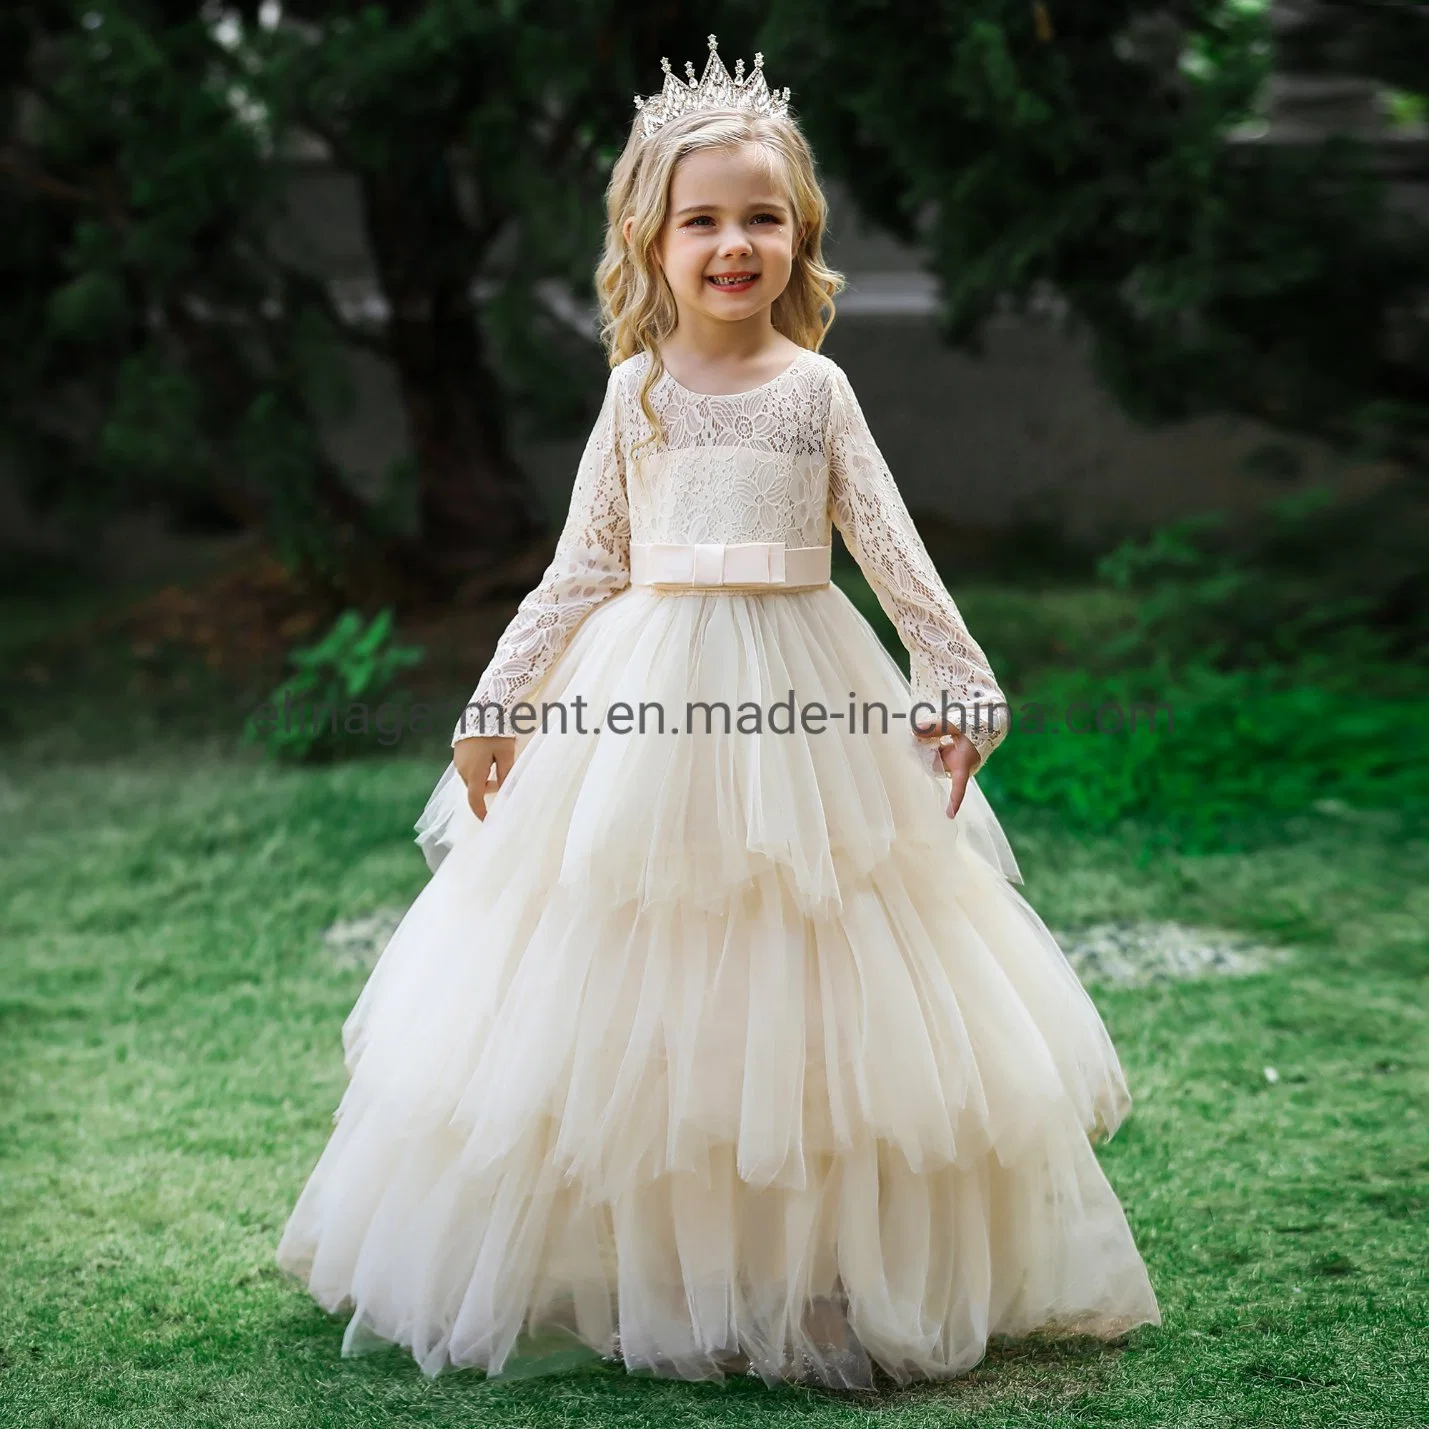 Children Apparel Baby Wear Girls Party Garment Wedding Dress Ball Gown Princess Frock Sweet Cake Dress